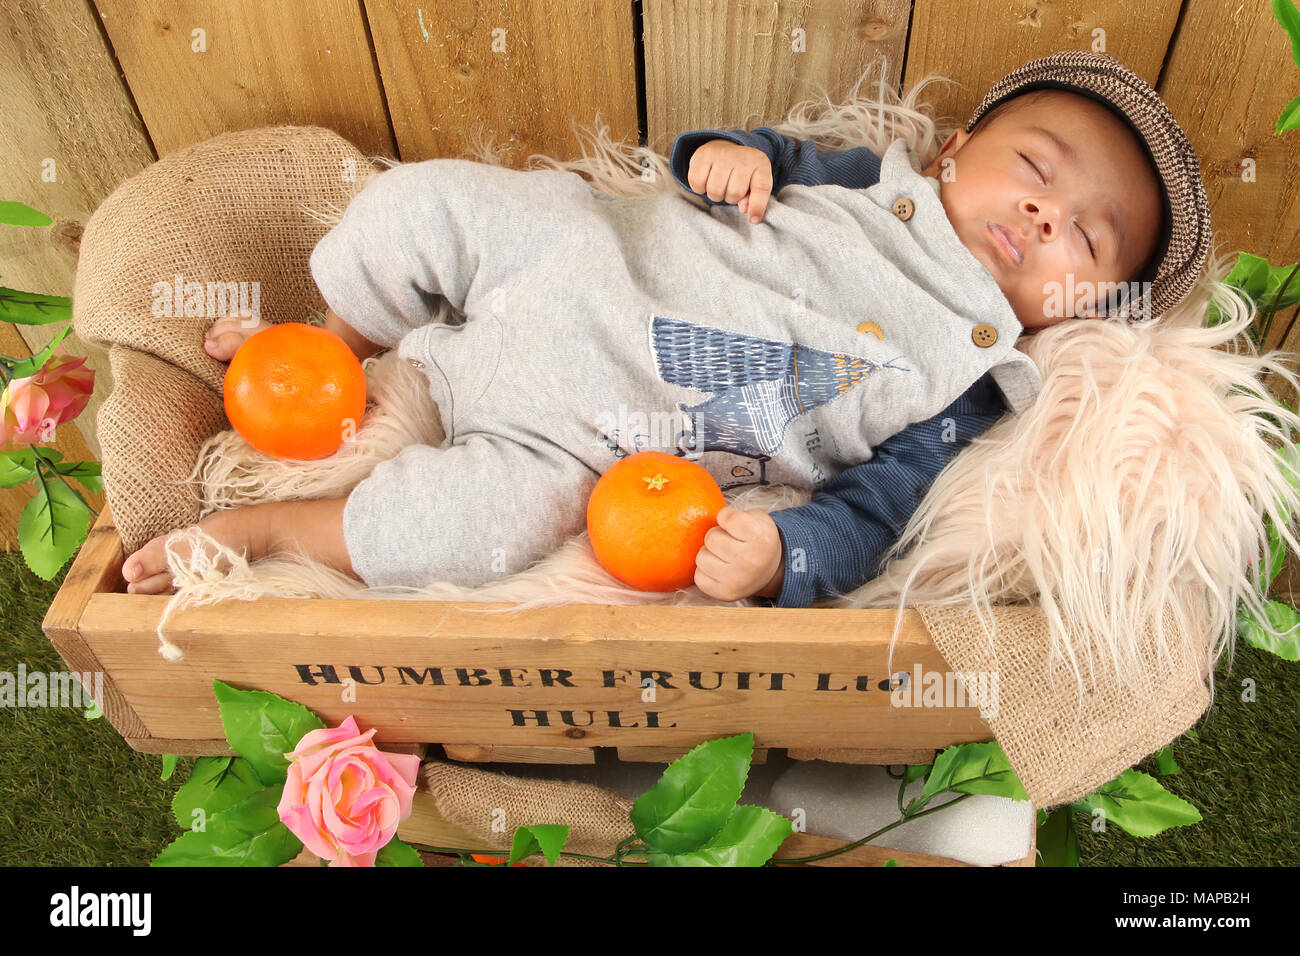 10 week old ethnic baby boy sleeping in fruit box Stock Photo